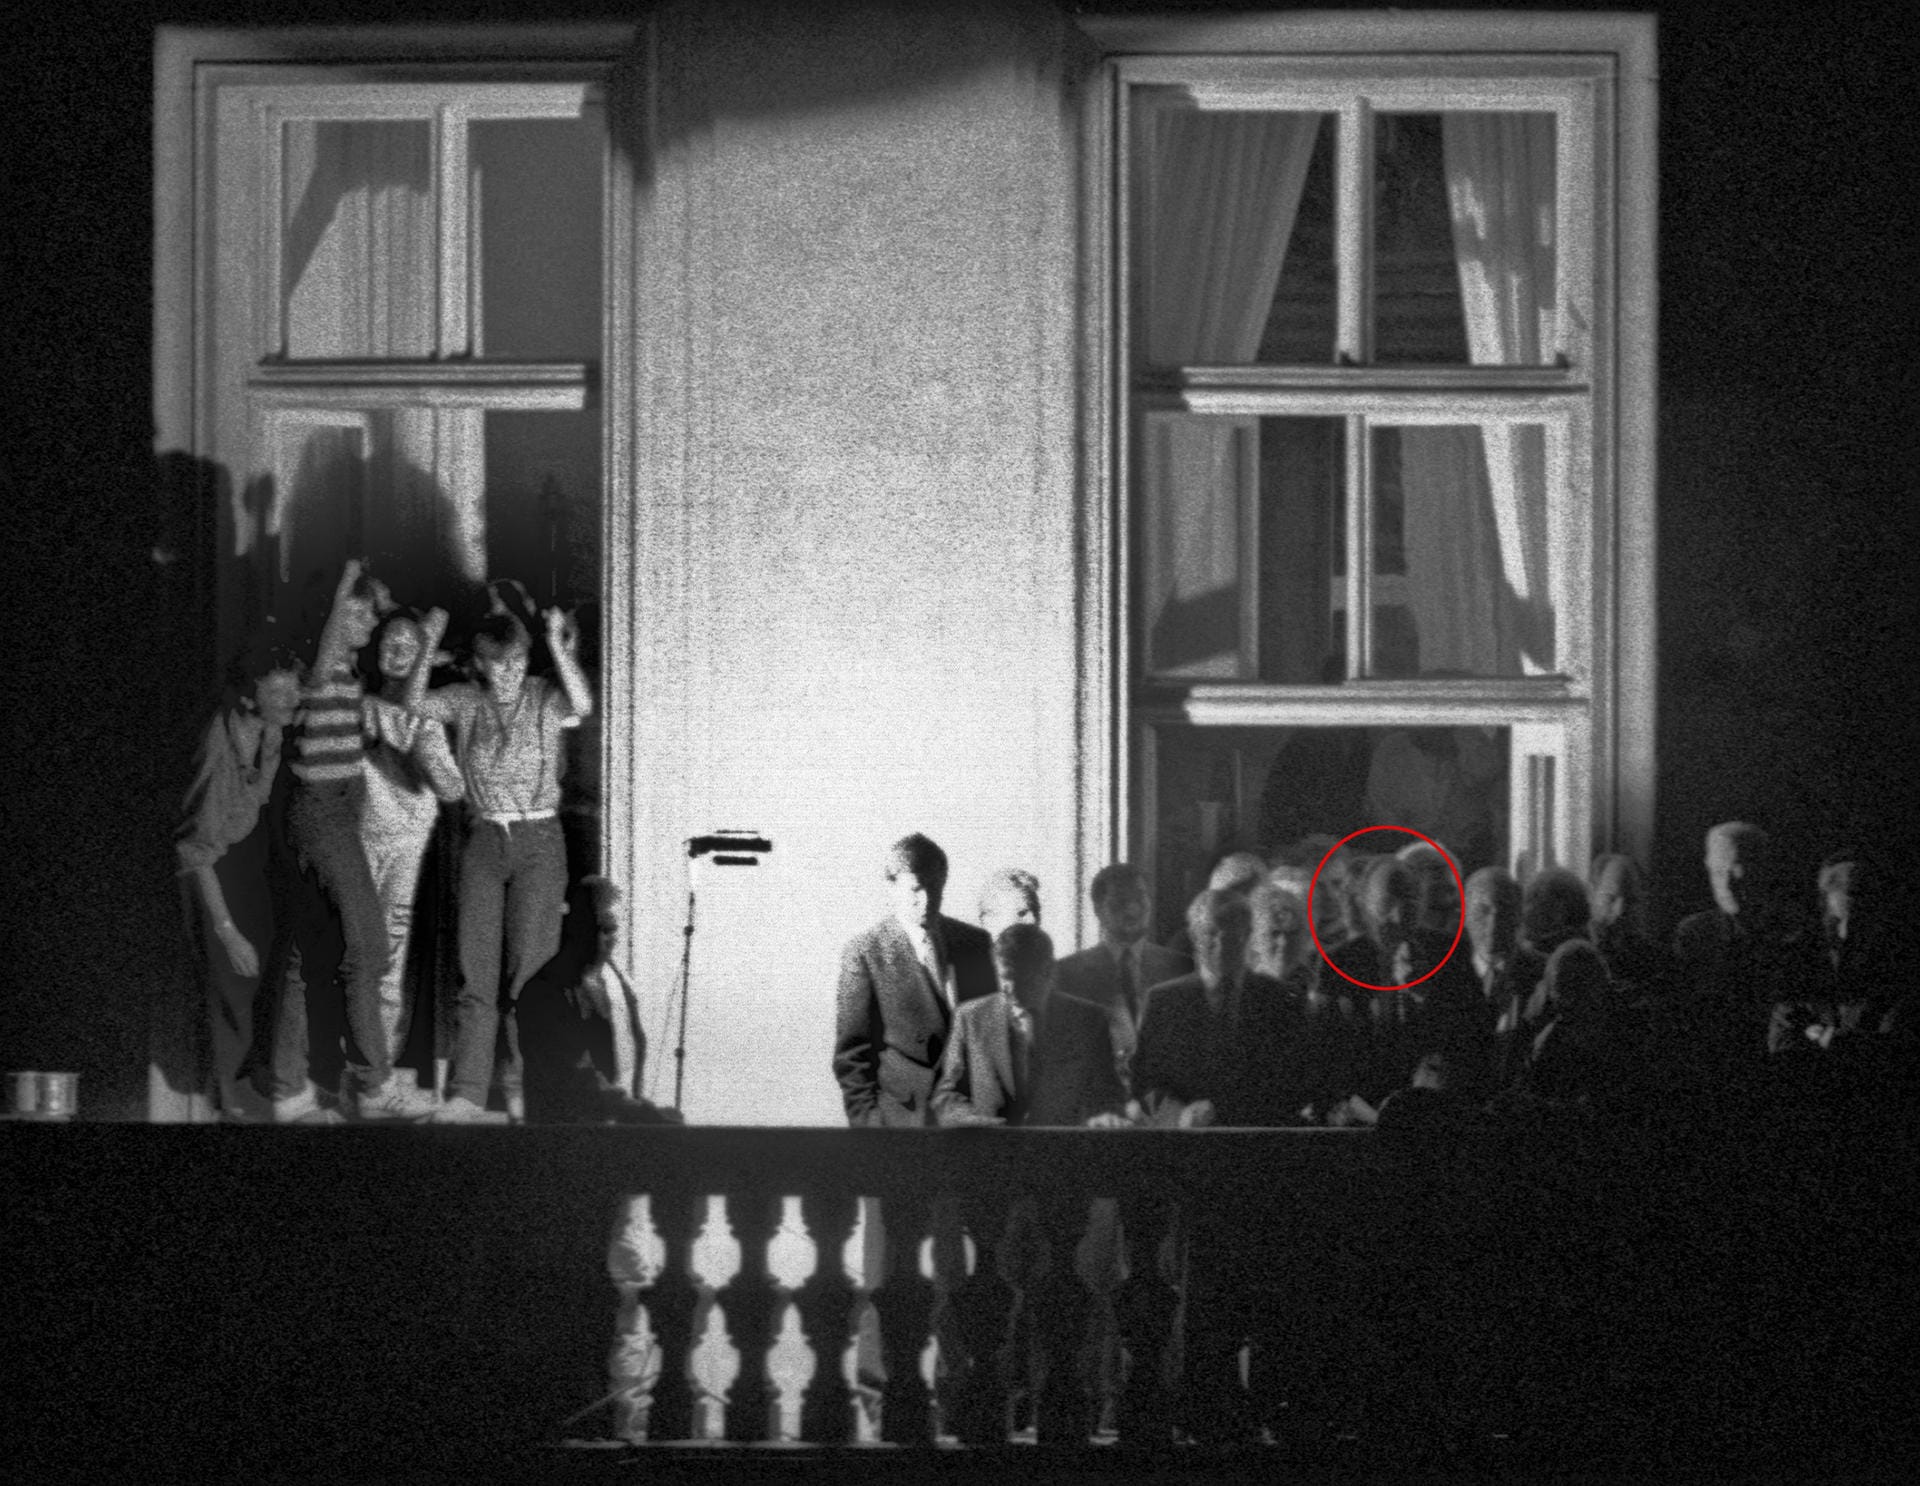 Ein historischer Moment seiner Amtszeit als Außenminister: Genscher verkündete am 30. September 1989 vom Balkon der deutschen Botschaft in Prag den 4000 Flüchtlingen aus der DDR, dass die Regierung ihrer Ausreise zugestimmt habe.